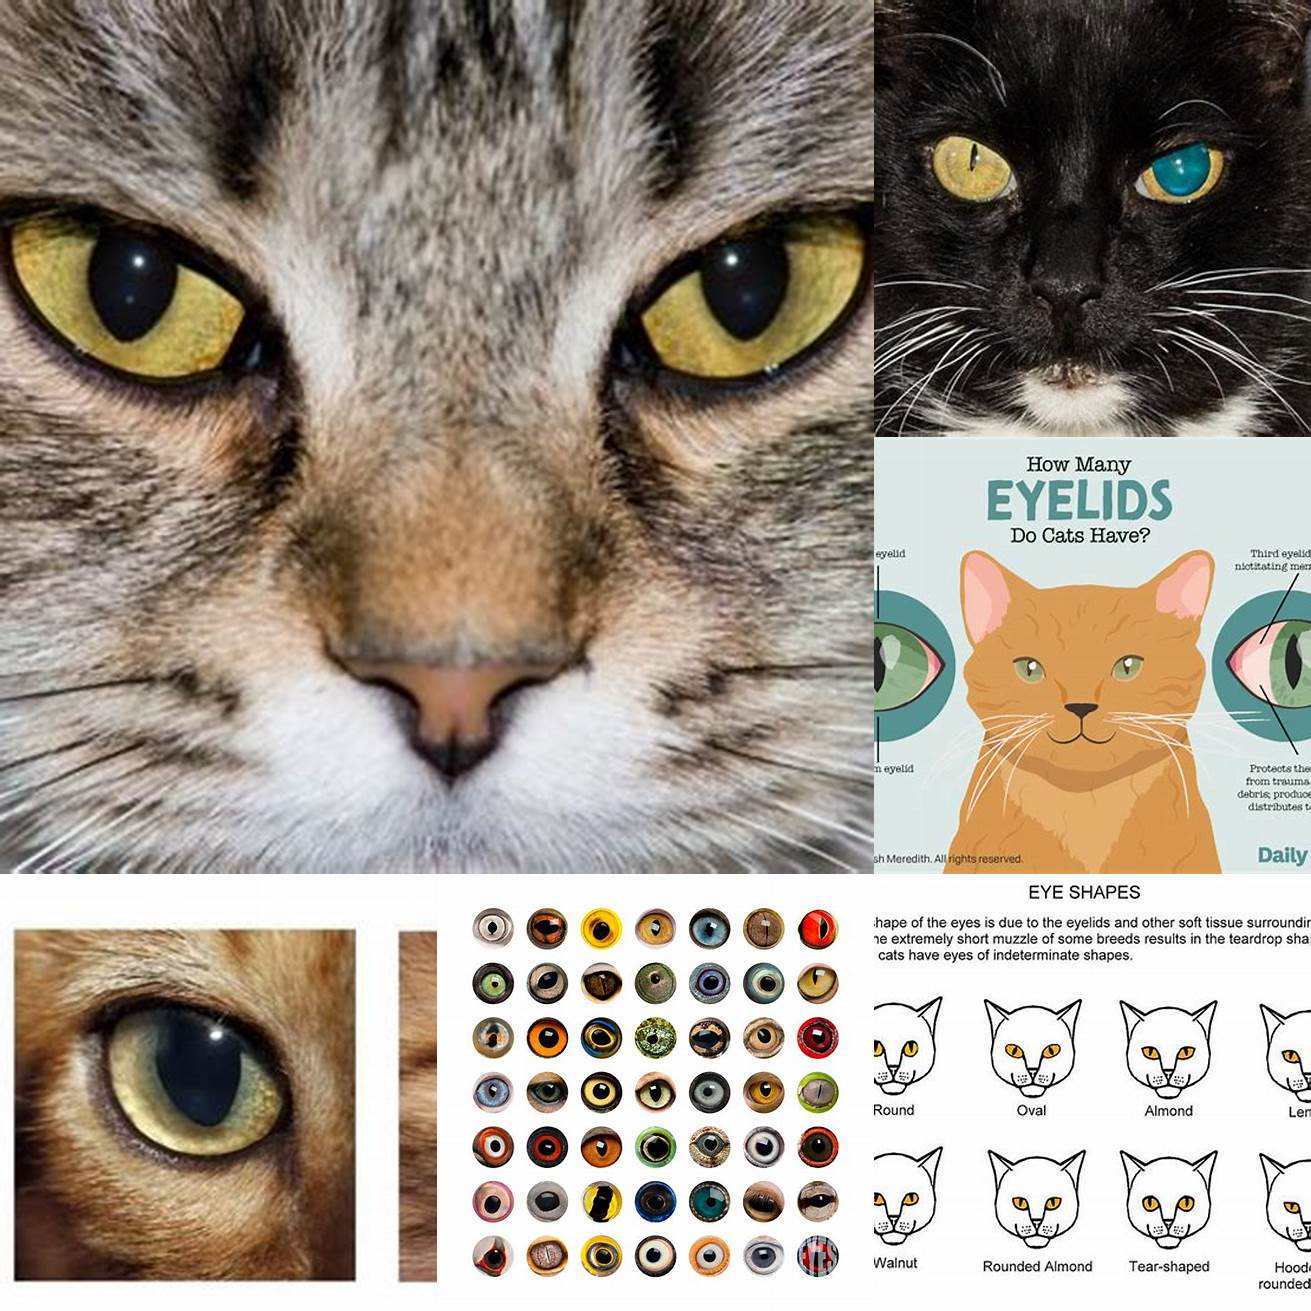 Image 5 Cat Pupil Size Comparison